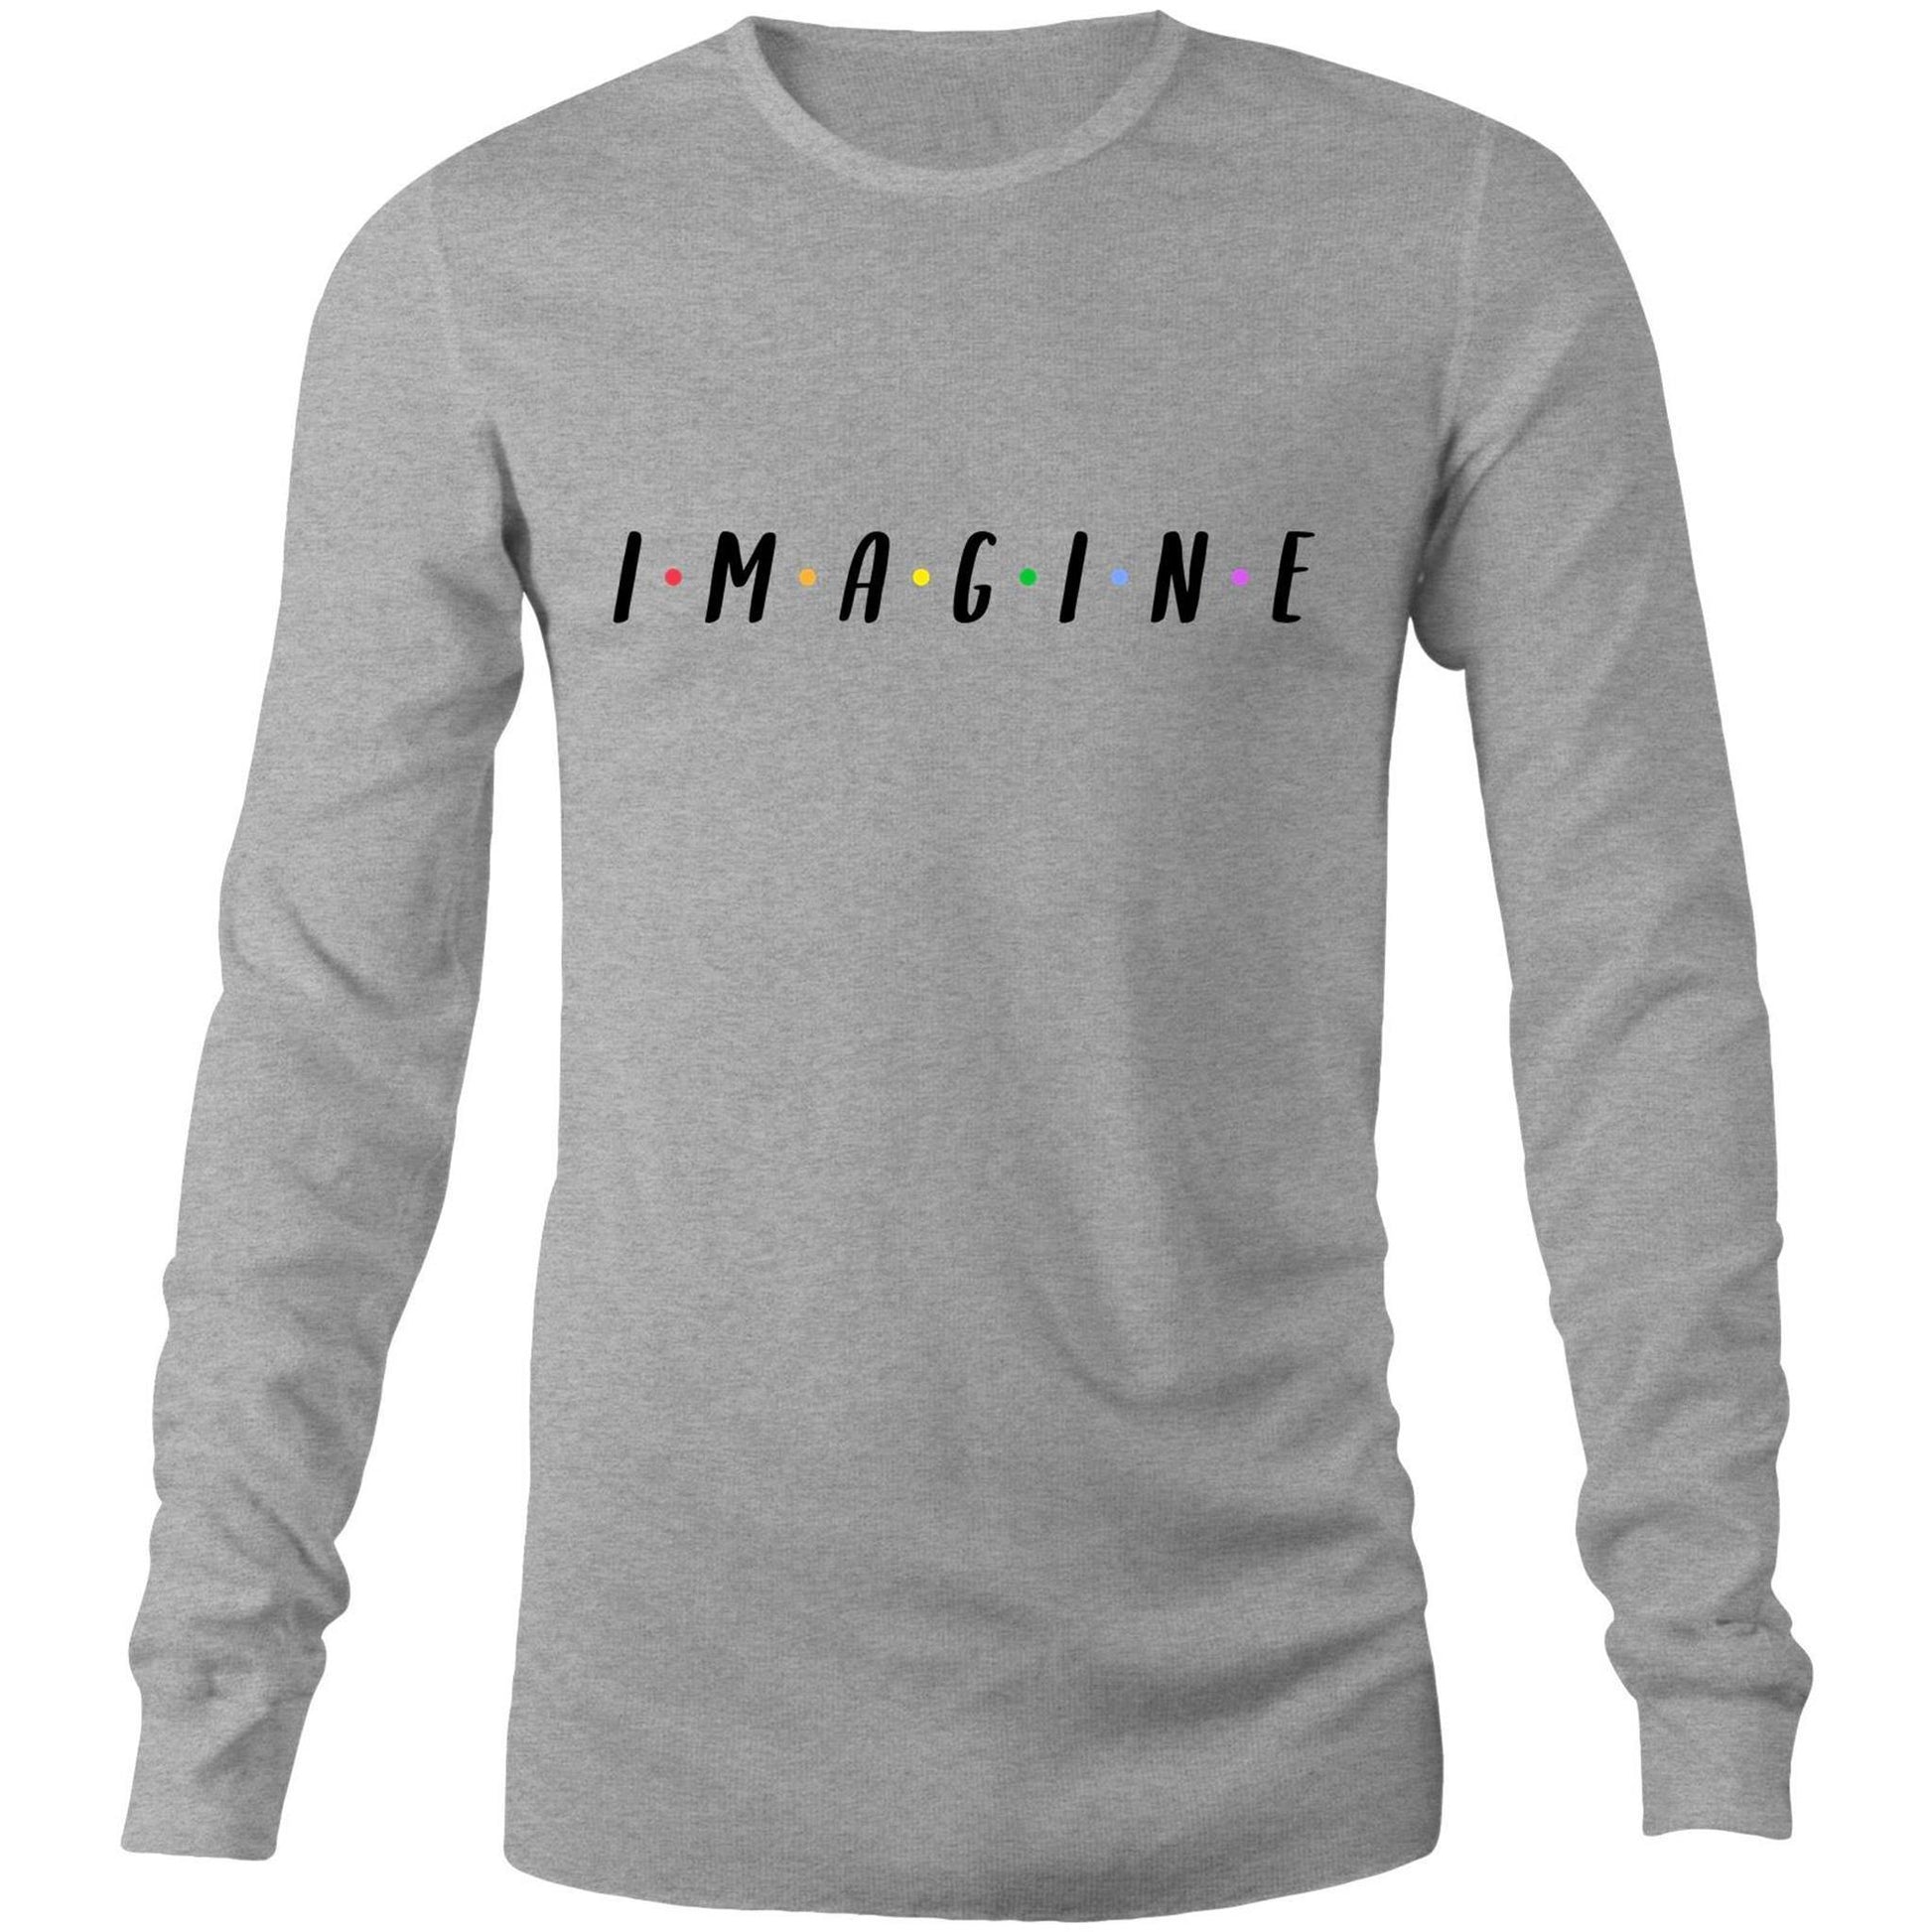 Imagine - Long Sleeve T-Shirt Grey Marle Unisex Long Sleeve T-shirt Mens Womens